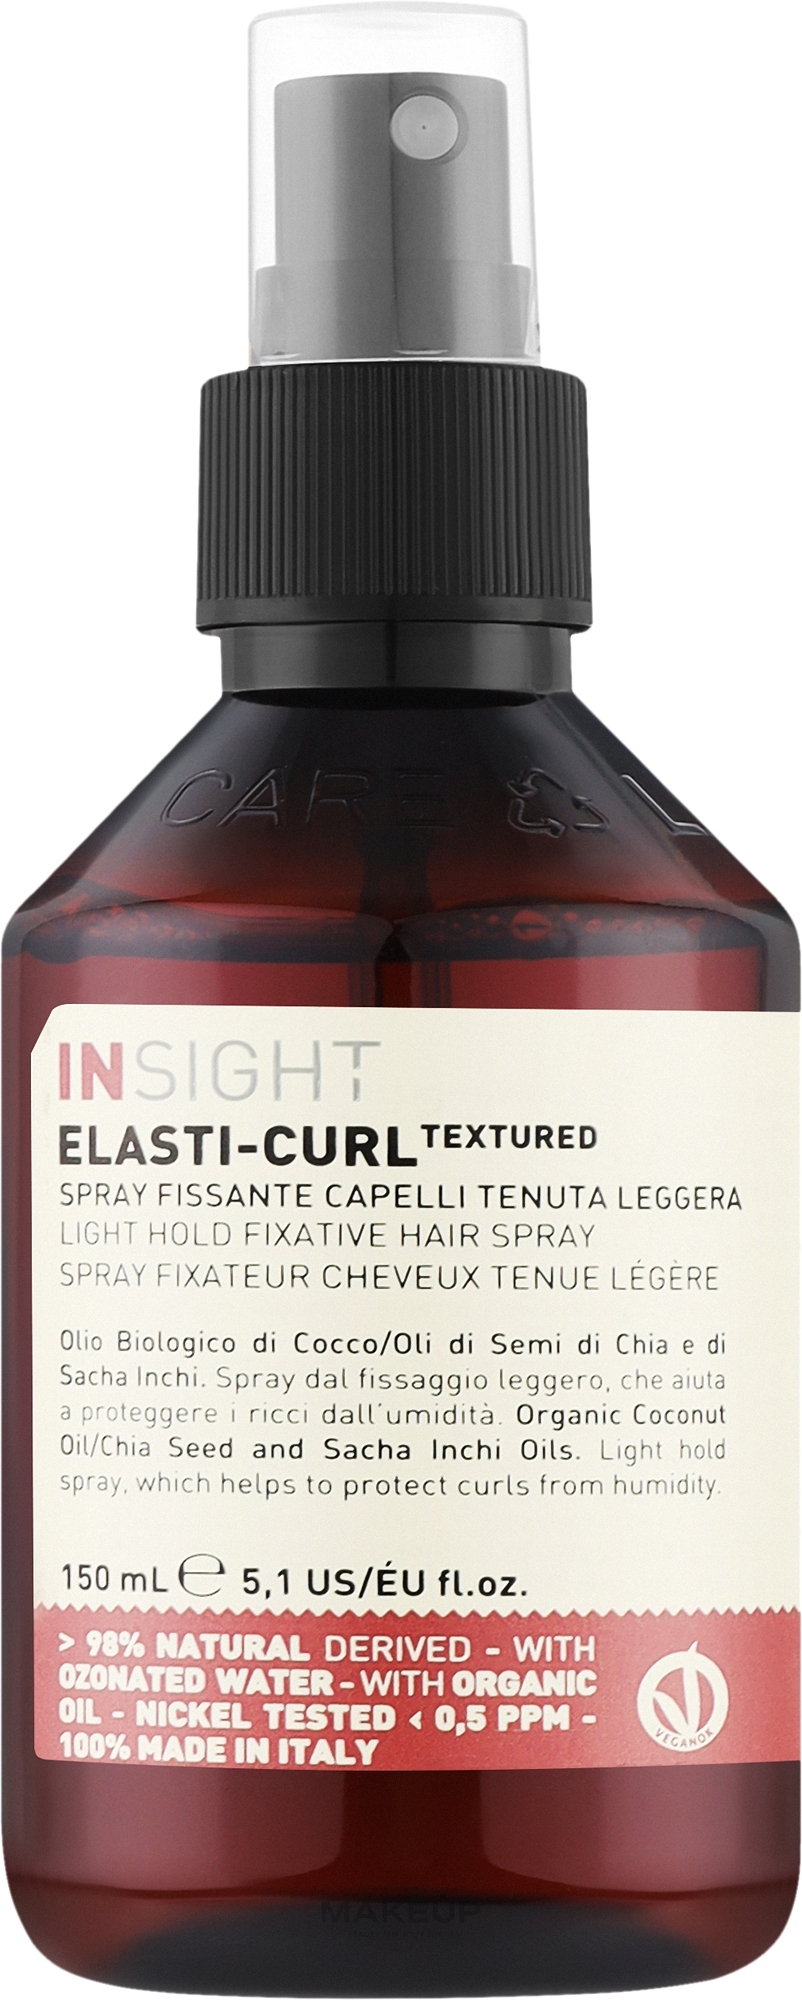 Фіксувальний спрей для волосся легкої фіксації - Insight Elasti-Curl Textured Light Hold Fixative Hair Spray — фото 150ml